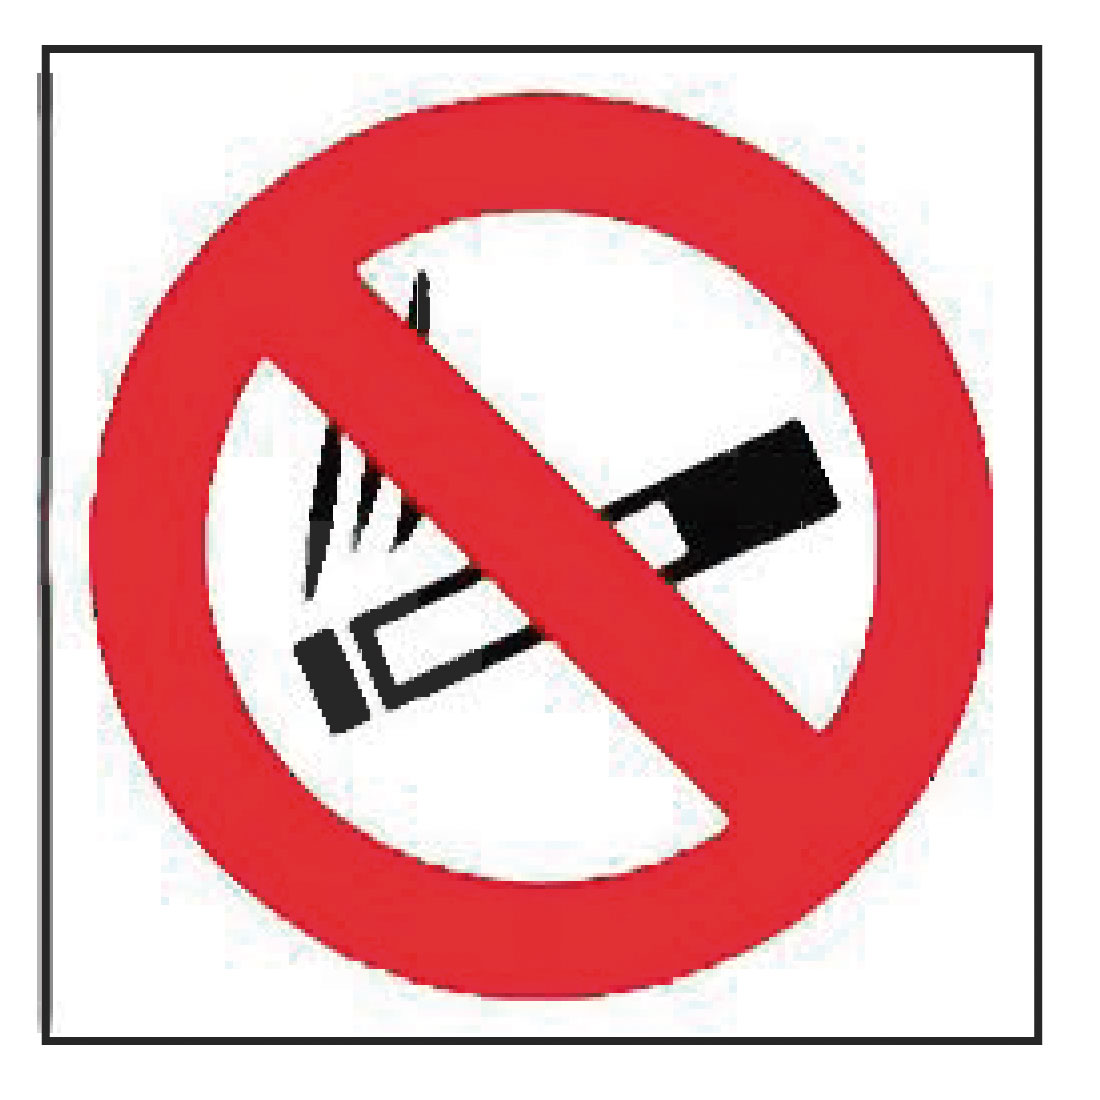 Señal prohibido fumar - SEÑALES DE PROHIBICIÓN